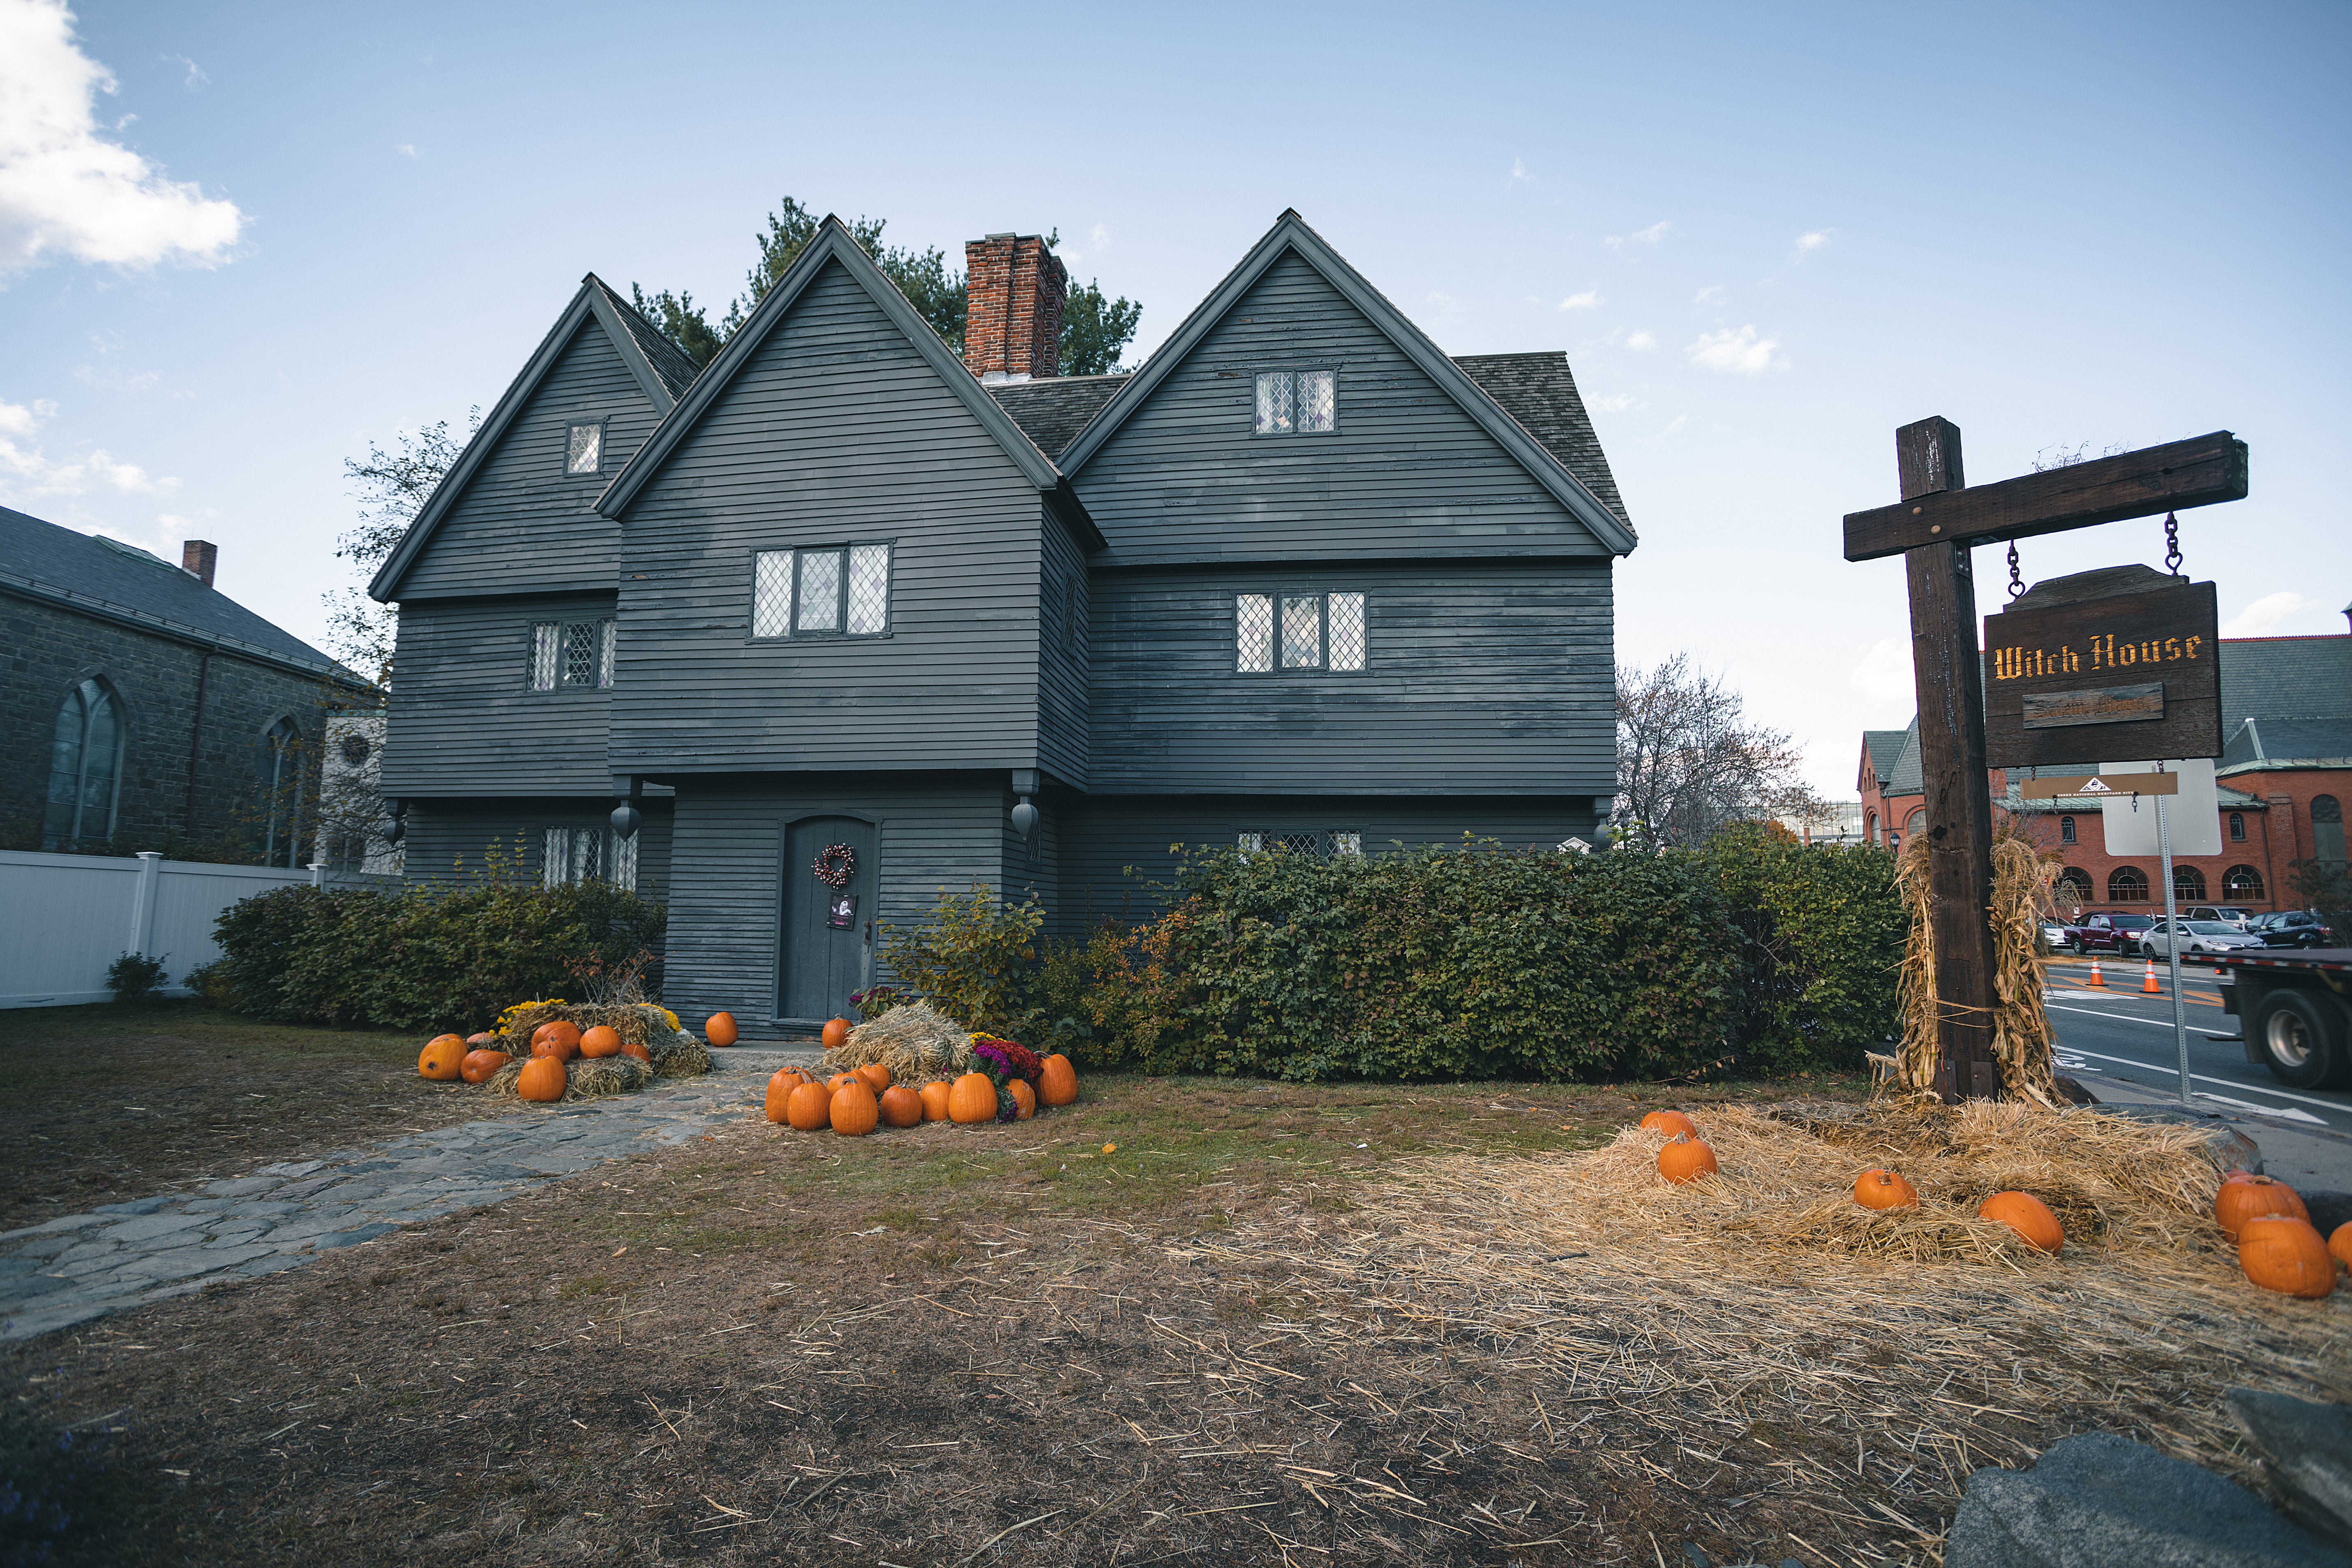 Salem witch trials museum in america 